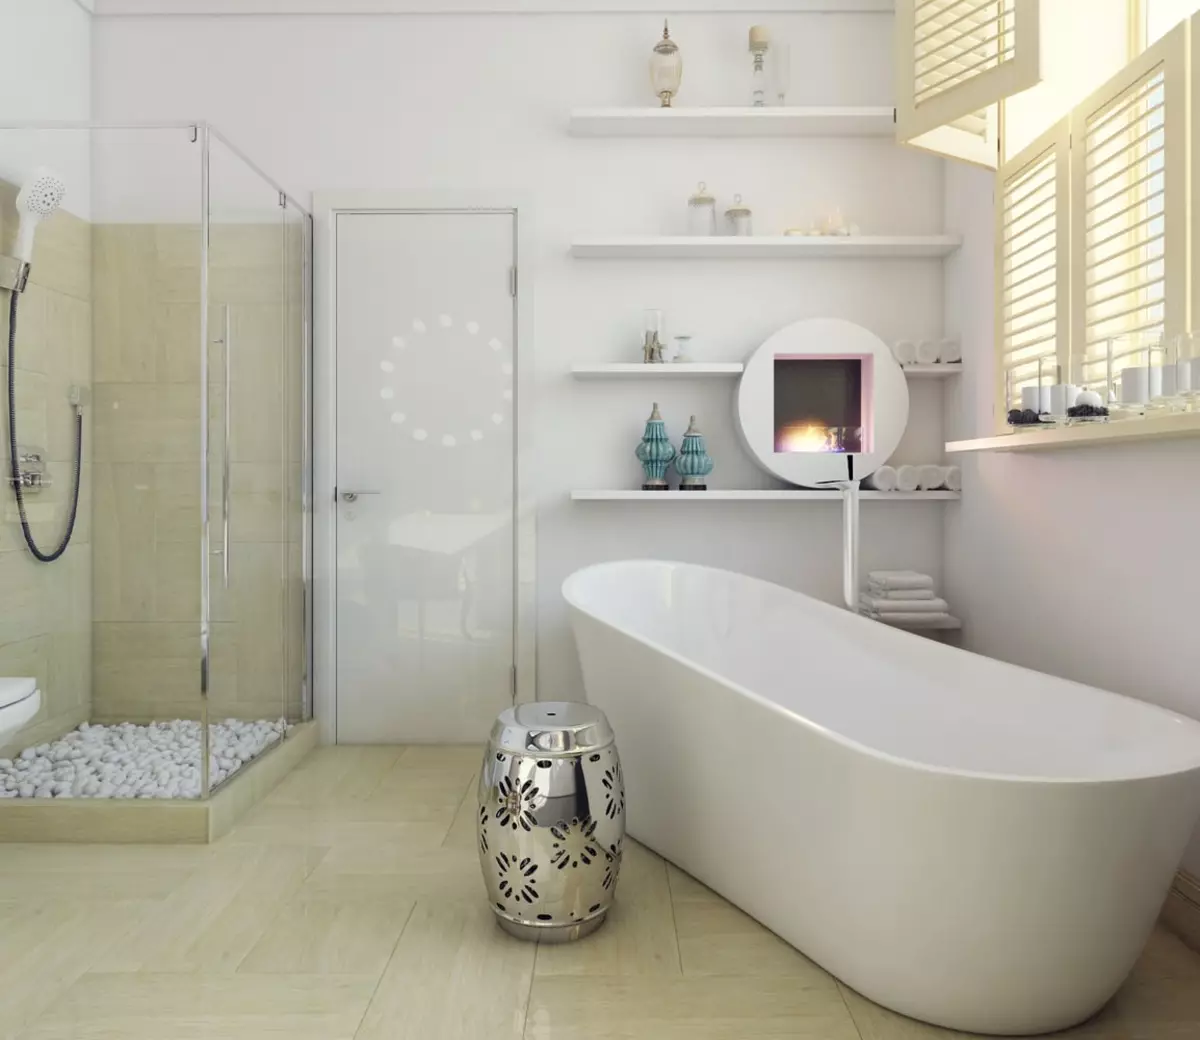 Salle de bain blanche (84 photos): design de chambre dans des tons blancs avec des accents lumineux. Idées de design d'intérieur modernes Petite salle de bain blanche avec inserts 10191_22